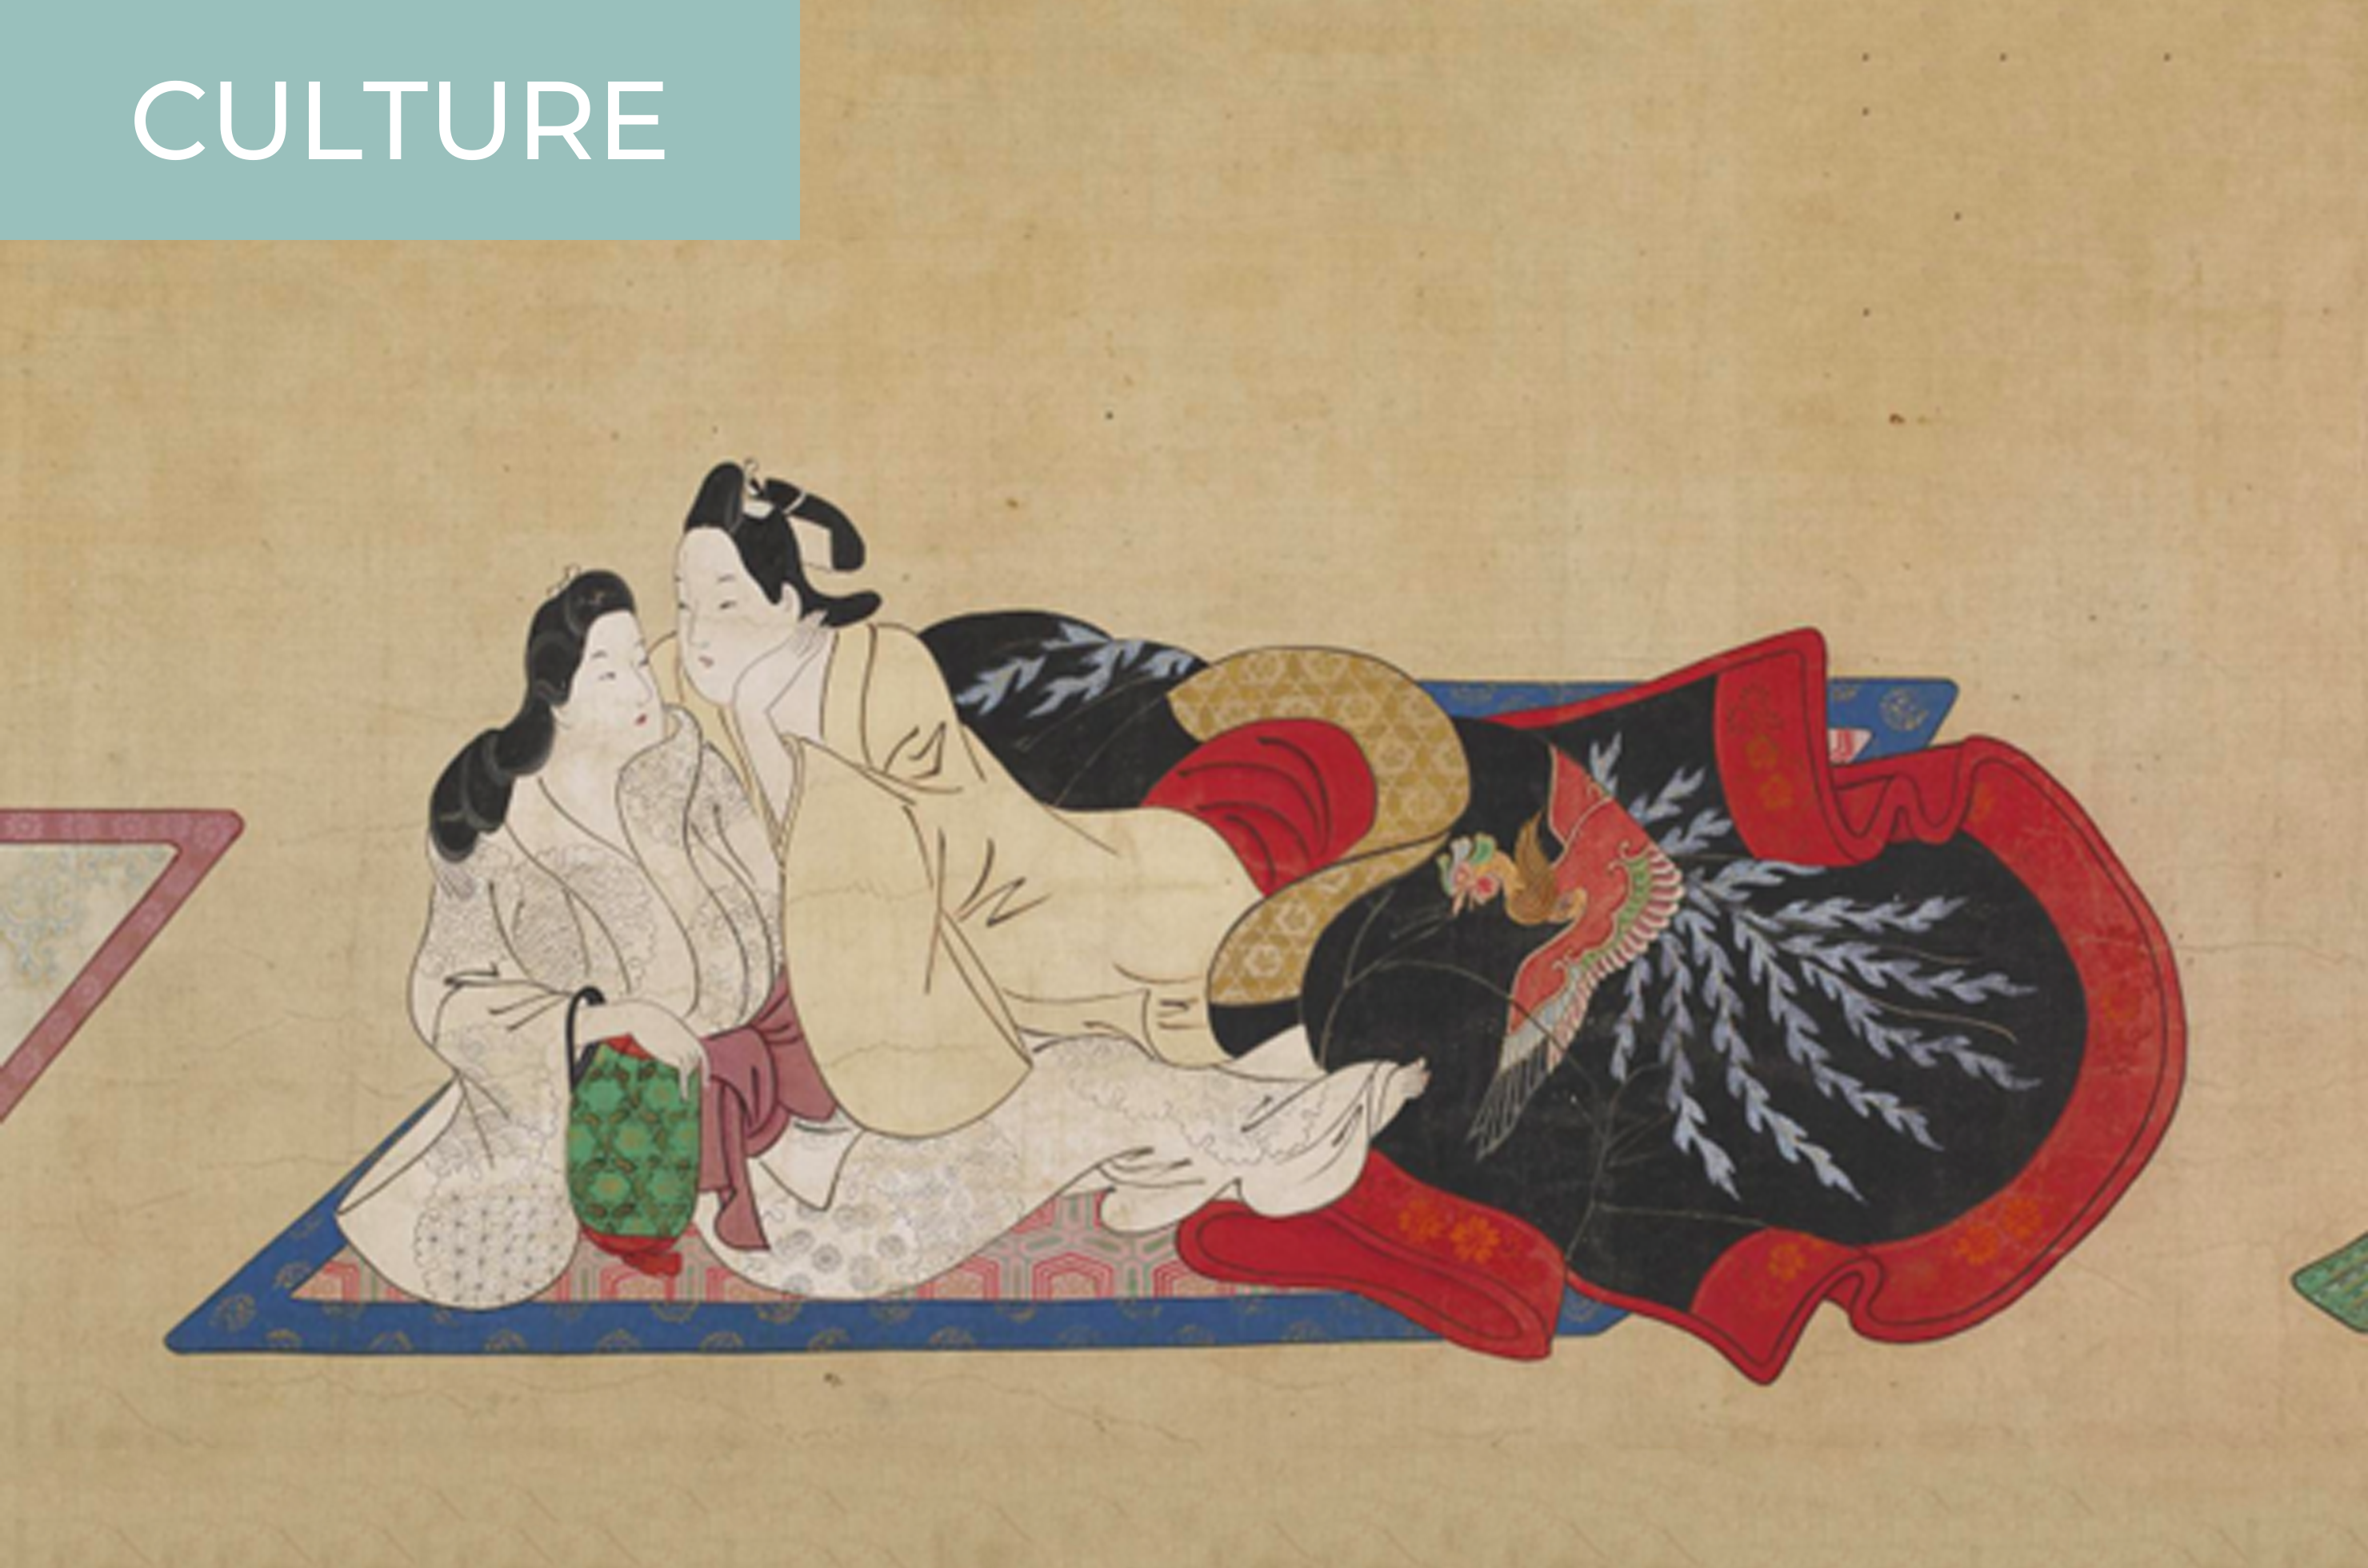 Shunga Ancient Japanese Pornography, or Something Else? image